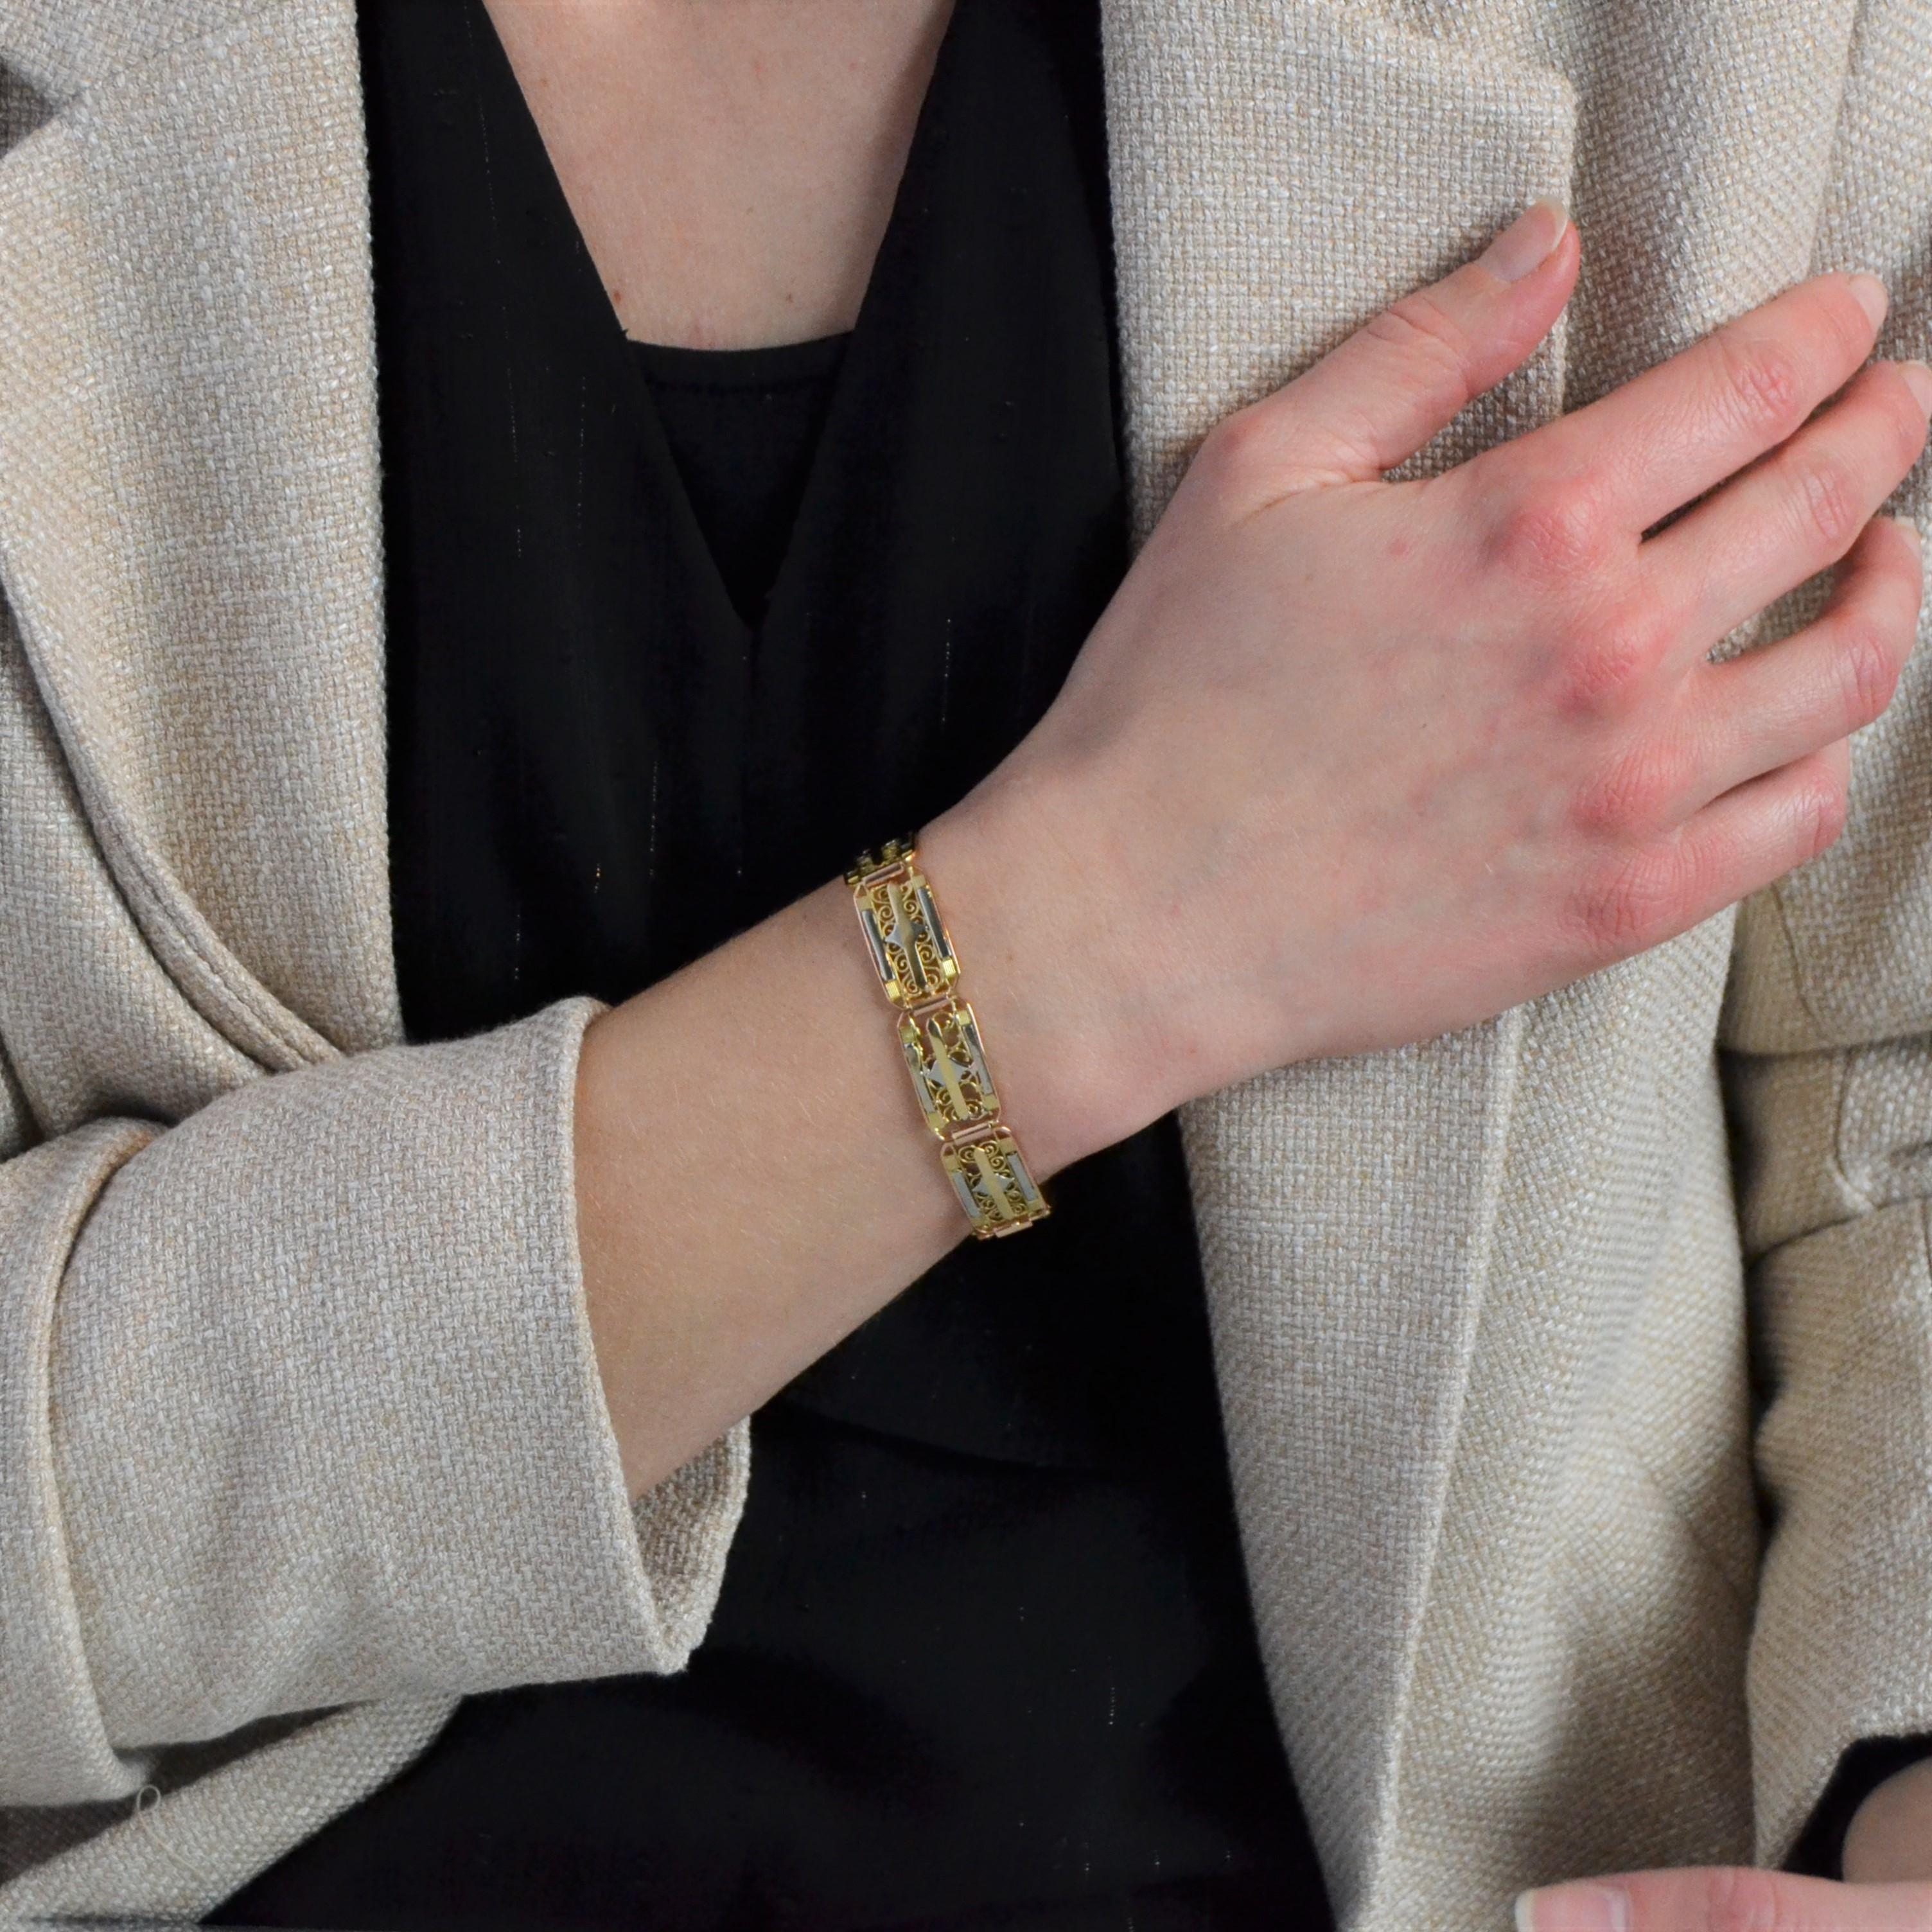 Armband aus 18 Karat Rosé-, Weiß- und Gelbgold, Adler und Nashornköpfe gestempelt.
Das prächtige antike Armband besteht aus einer Reihe von rechteckigen Mustern, die an den Ecken leicht abgerundet sind, durchbrochenen filigranen Verzierungen,